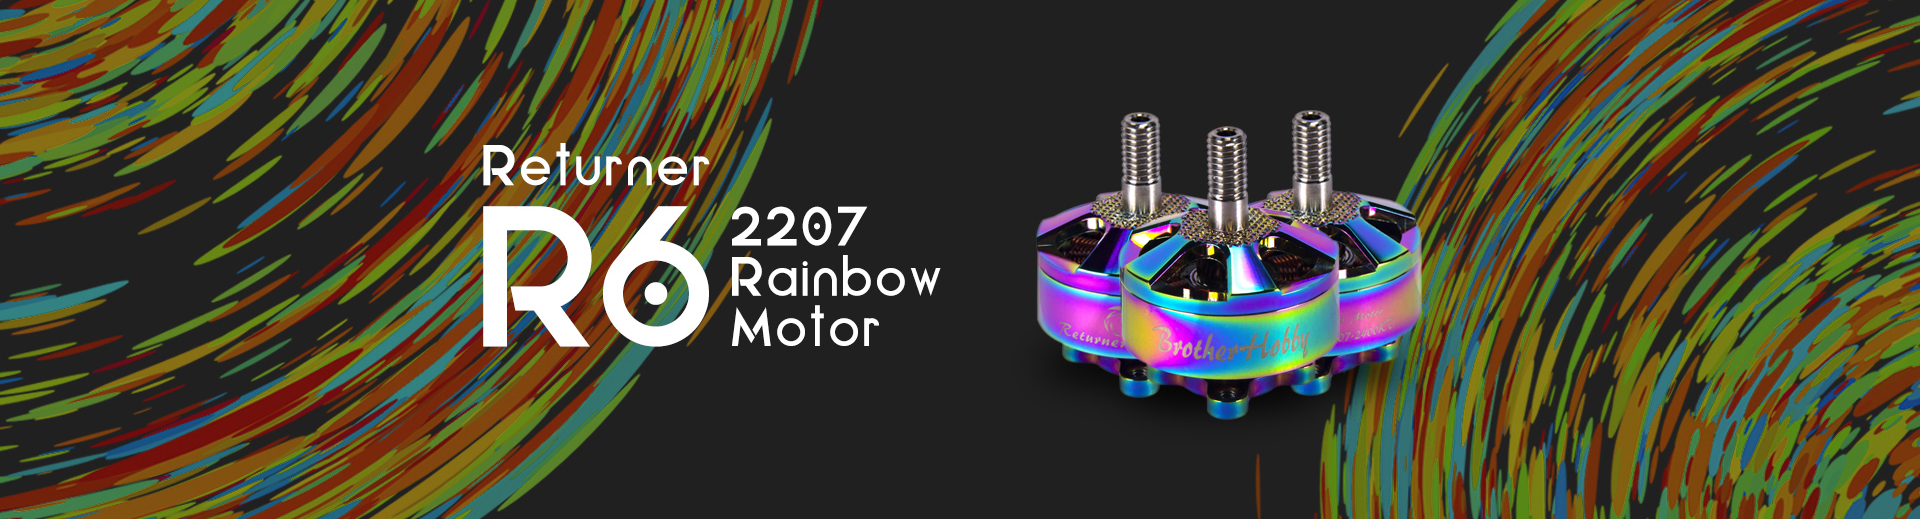 Returner R6 2207 Rainbow Motor